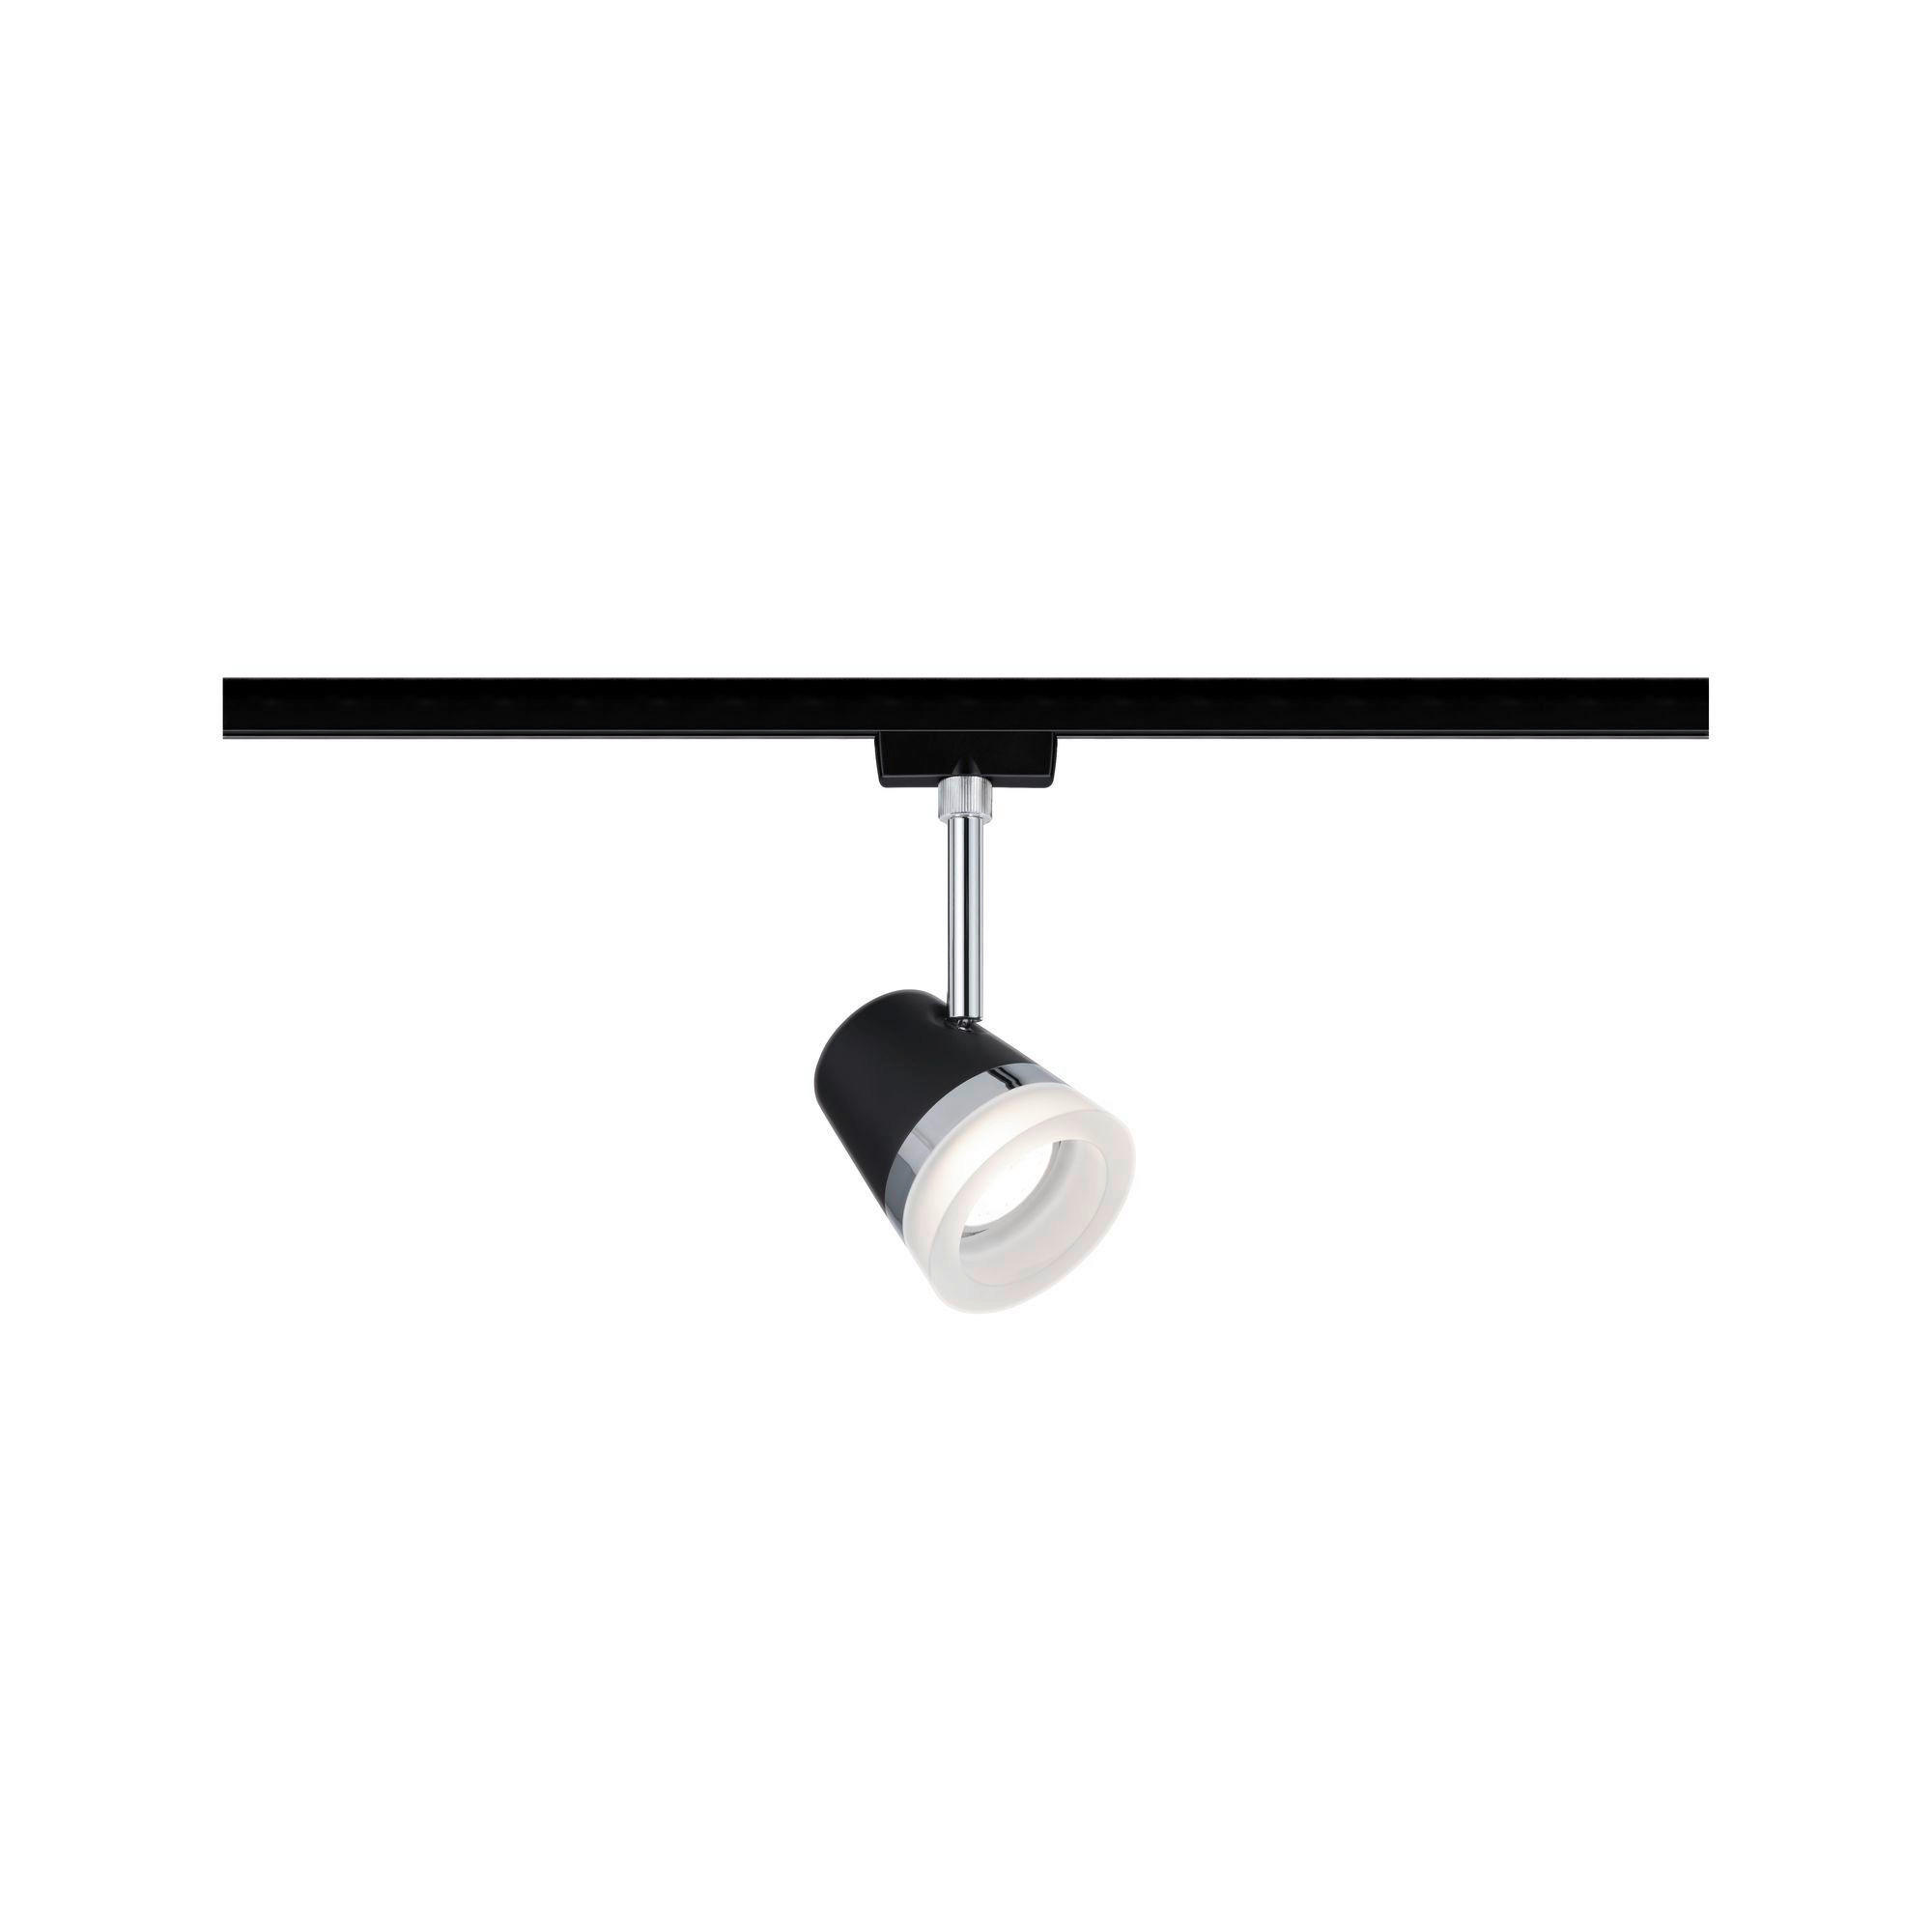 LED-DECKENLEUCHTE Urail   - Chromfarben/Schwarz, Design, Kunststoff/Metall (18,0cm) - Paulmann